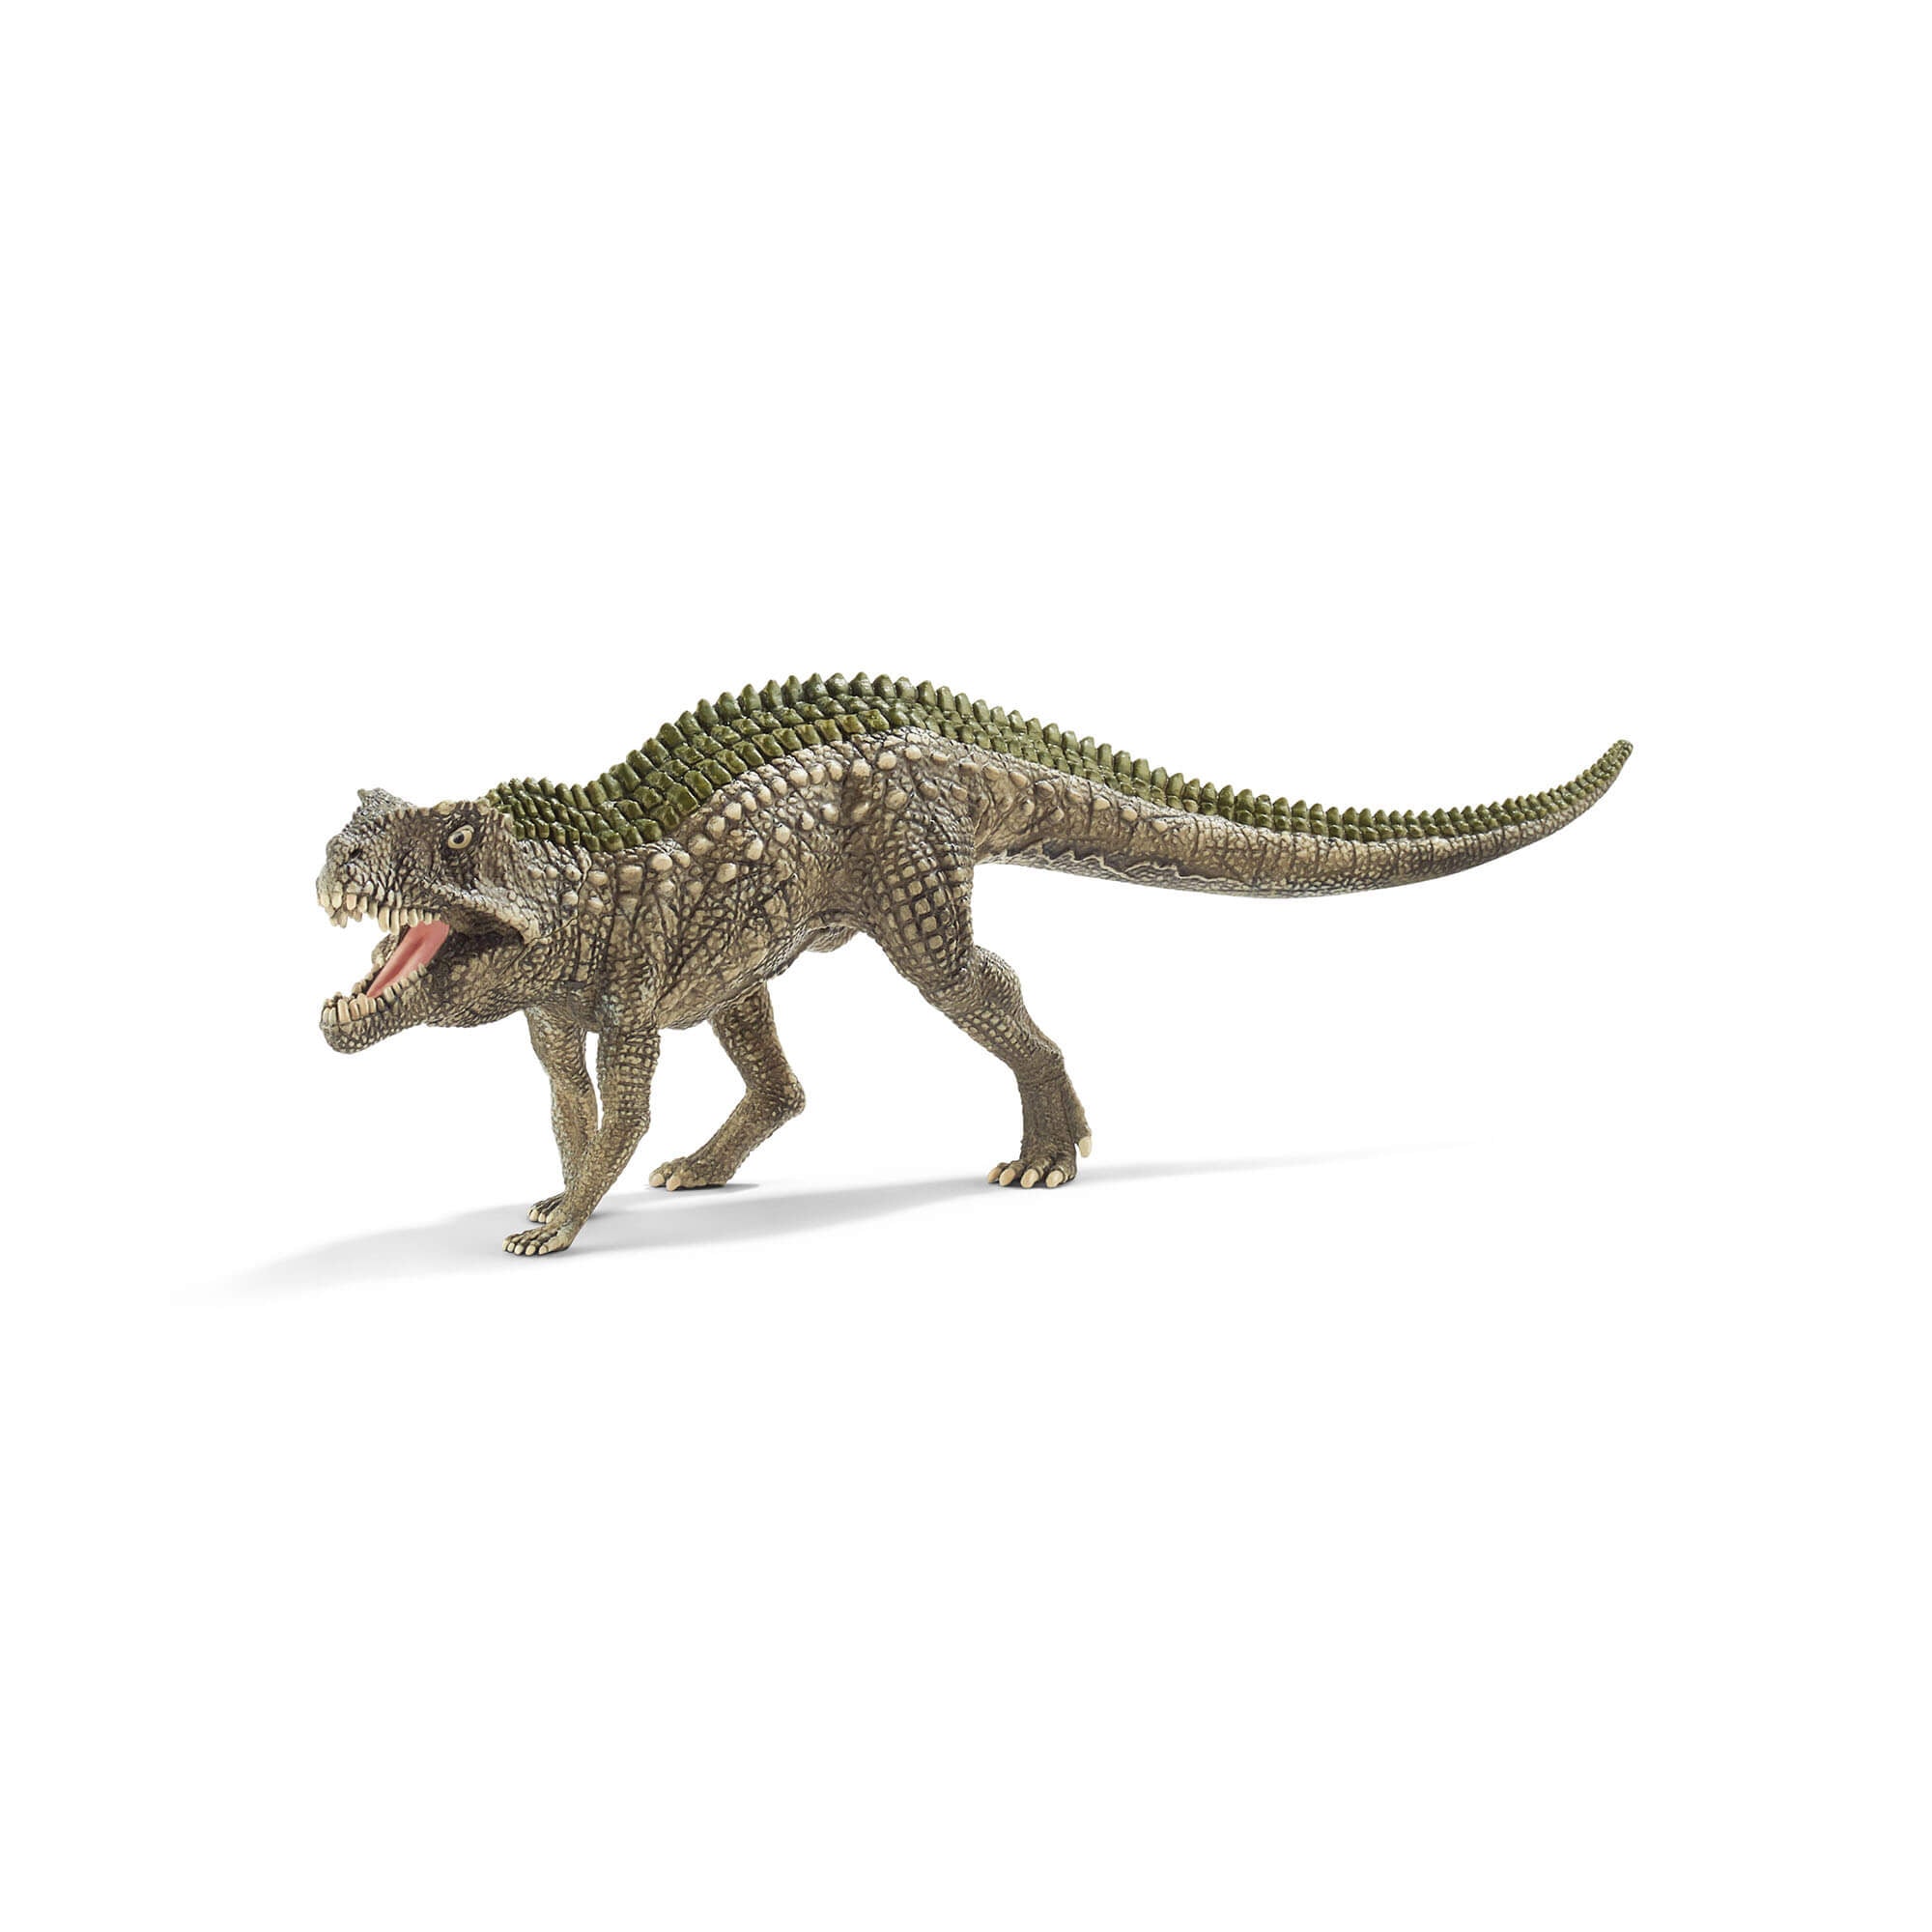 Schleich Dinosaurs Postosuchus Figure